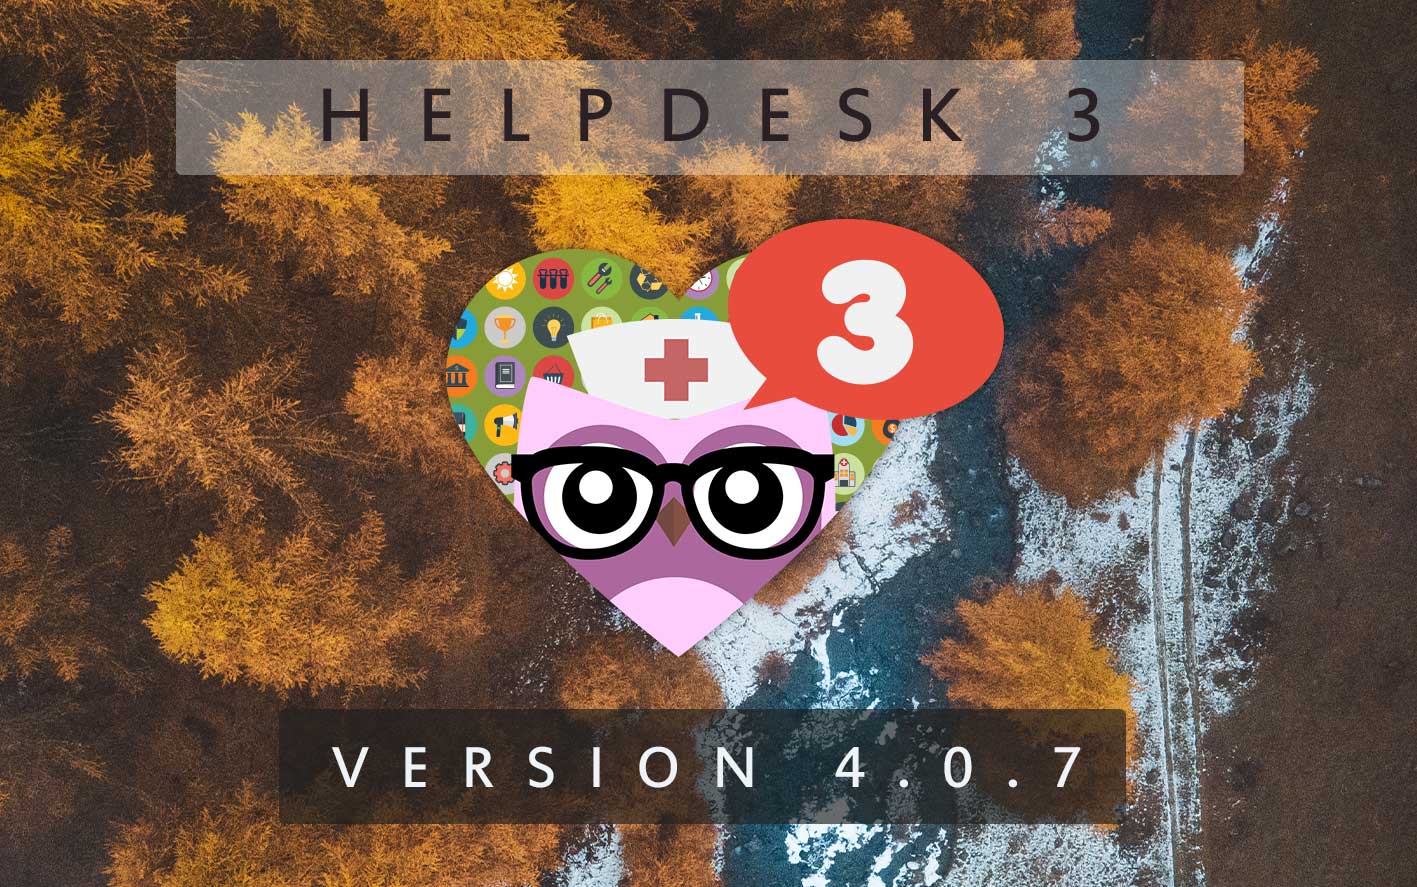 HelpDesk 3 - Version 4.0.7